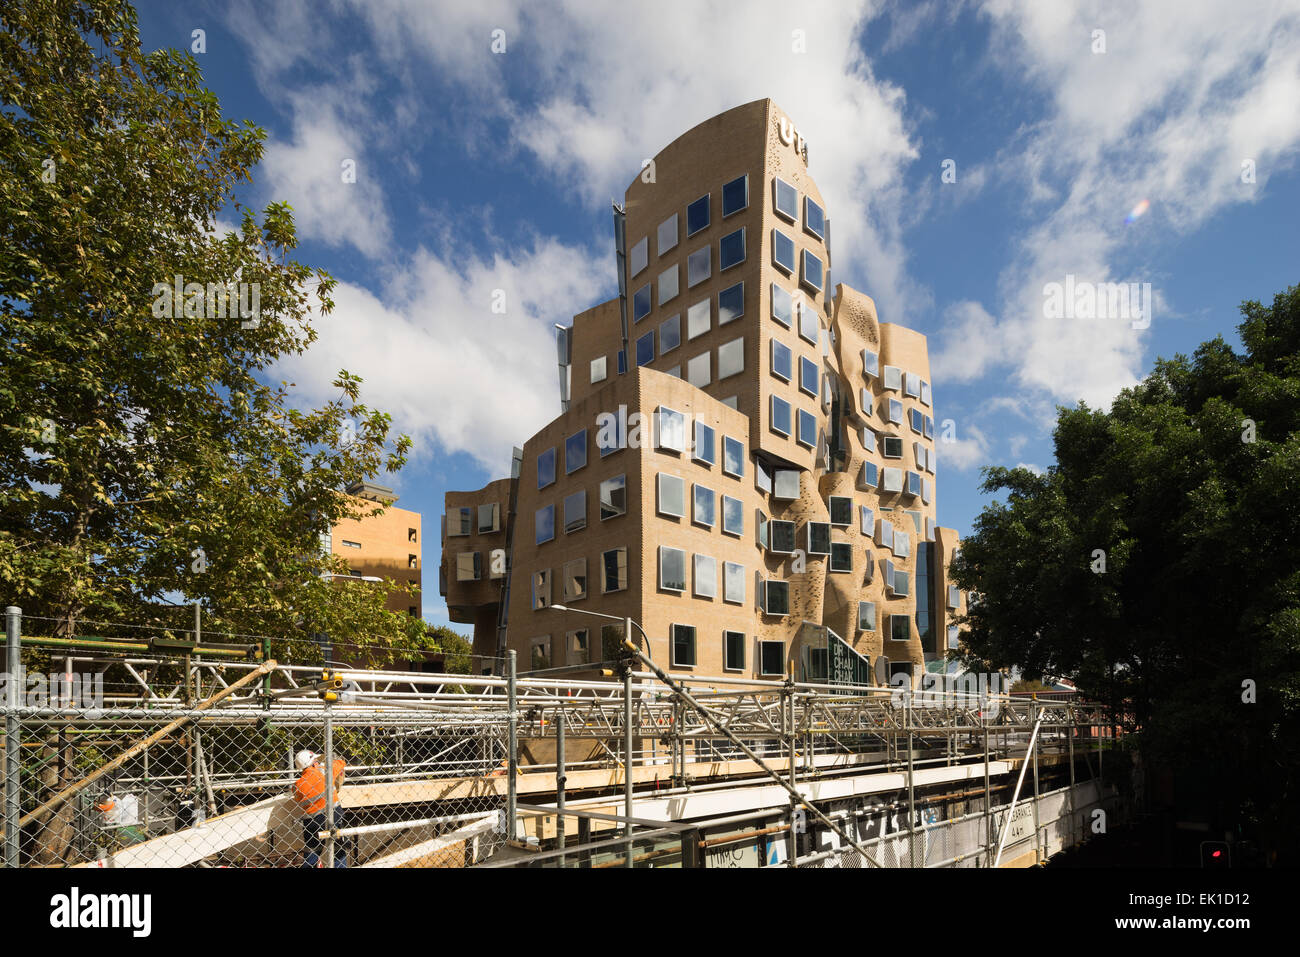 Le Dr Chau Chak Wing Building sur le campus de l'Université de Technologie de Sydney en Australie (UTS). Architecte : Frank Gehry. Banque D'Images